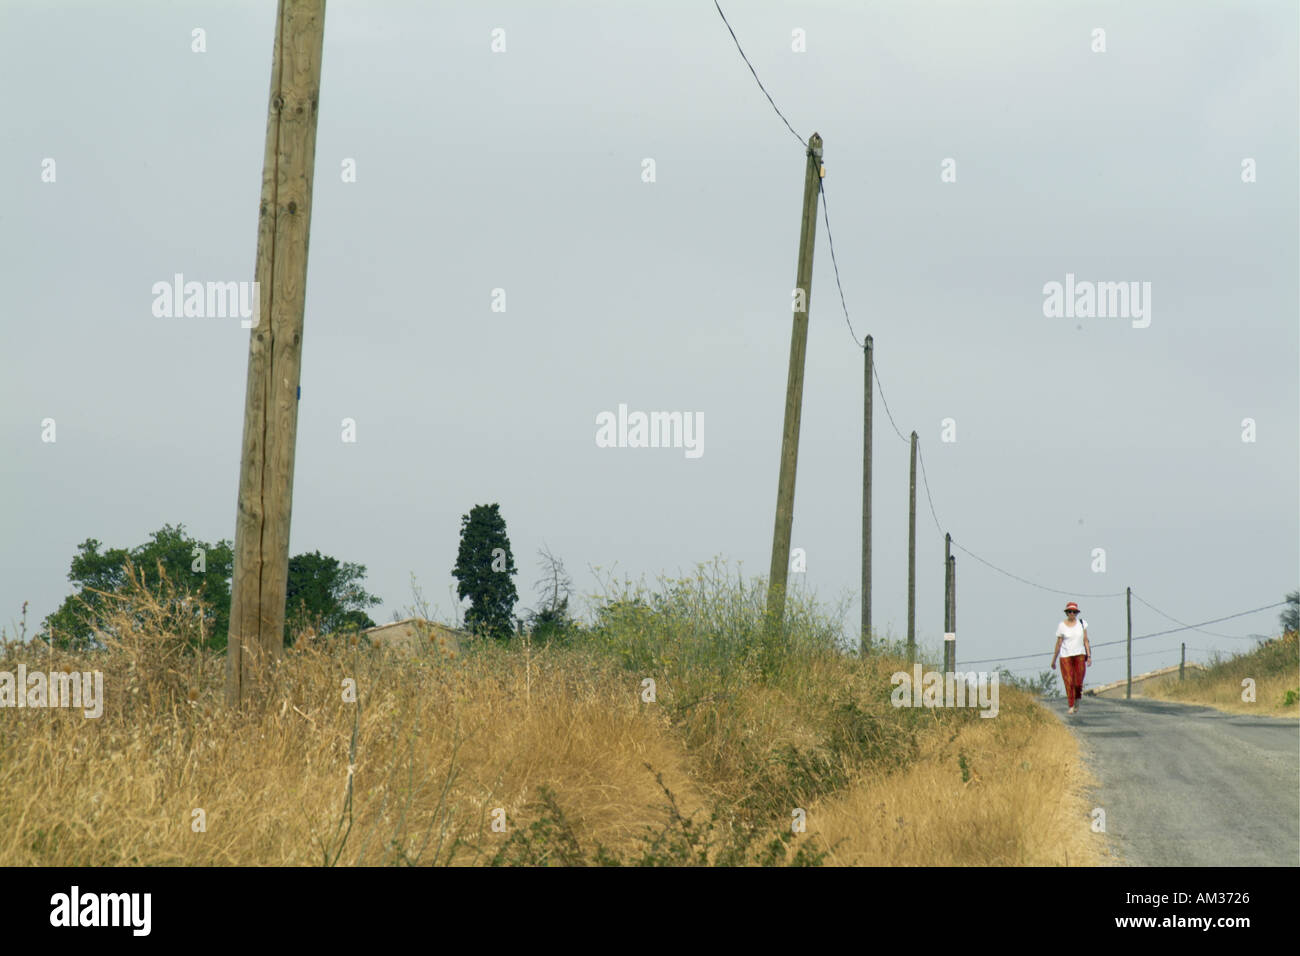 La France près de Carcassonne Alzonne hauts femme marche sur une route de campagne Banque D'Images